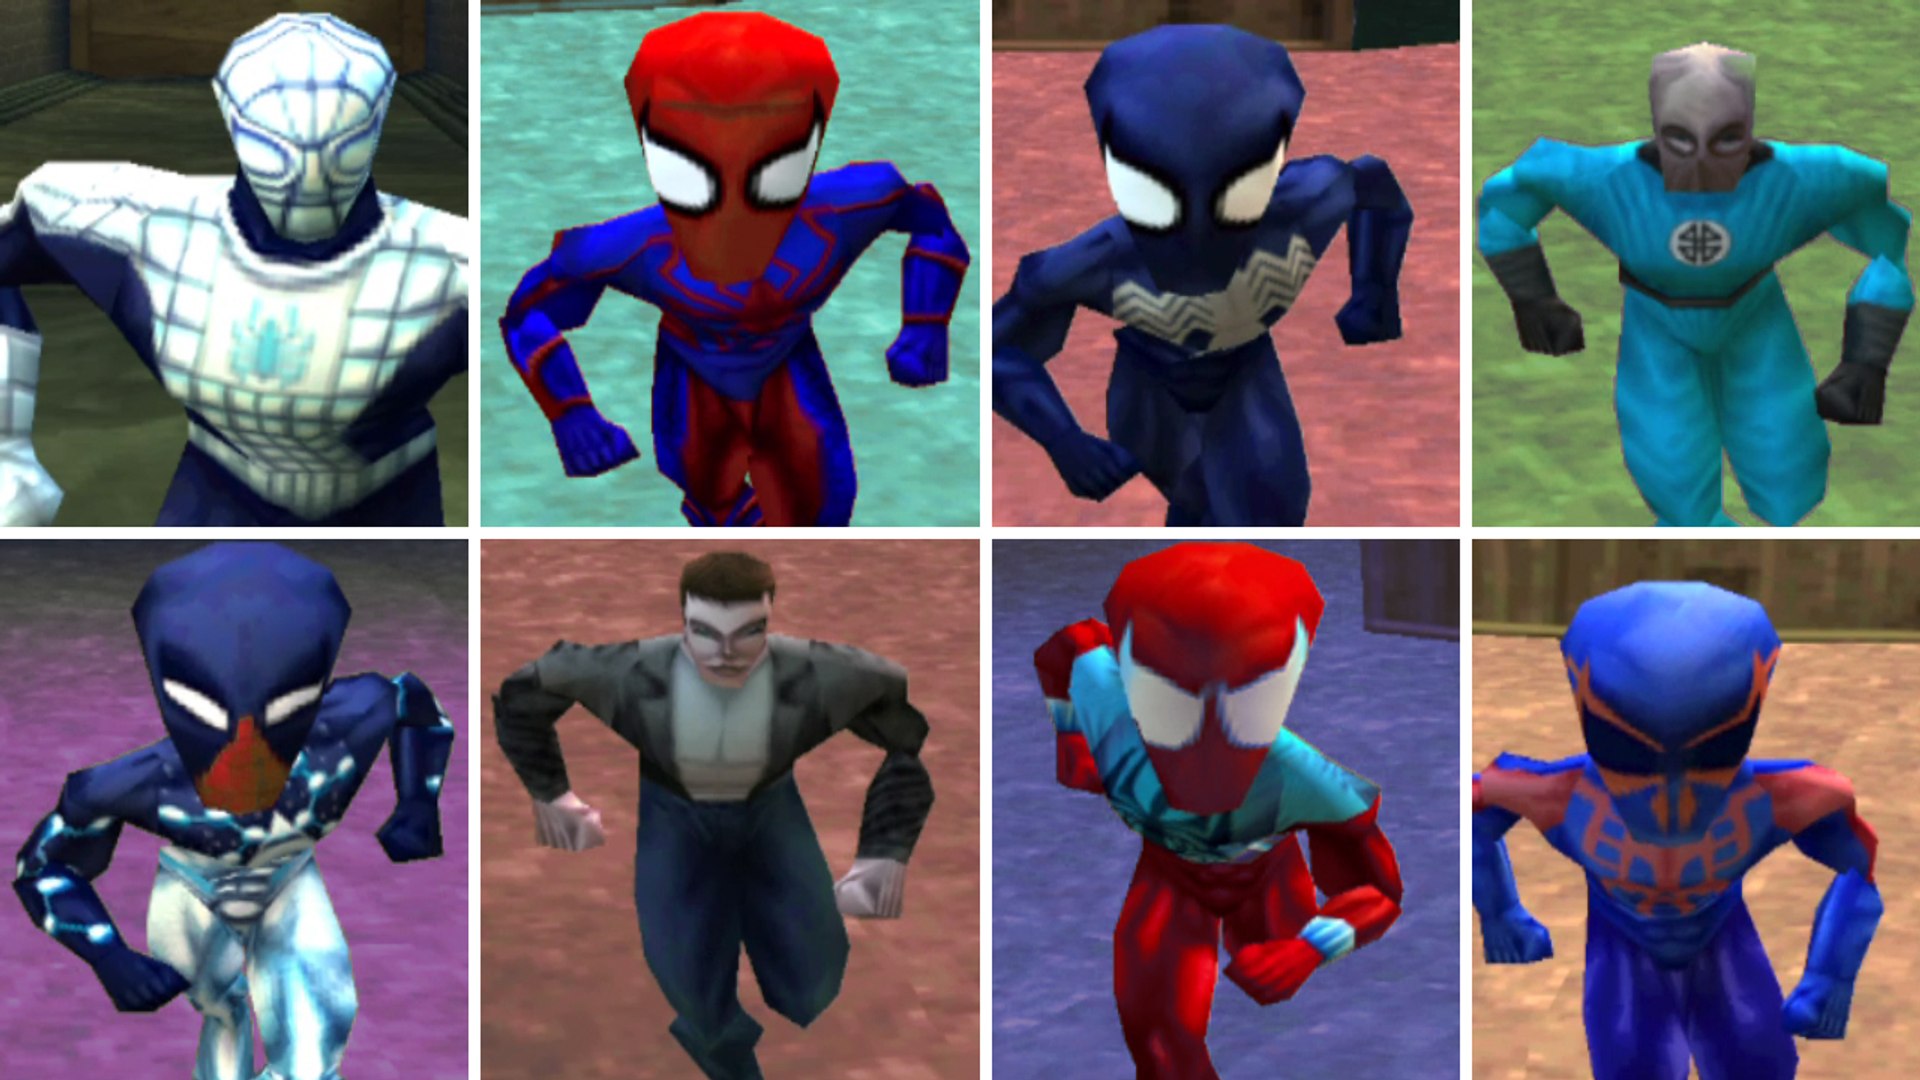 Игра в синем костюме. Spider man 2000 ps1. Spider man 1 ps1 костюмы. Spider man 2000 ps1 костюмы. Костюмы Spider man ps2.